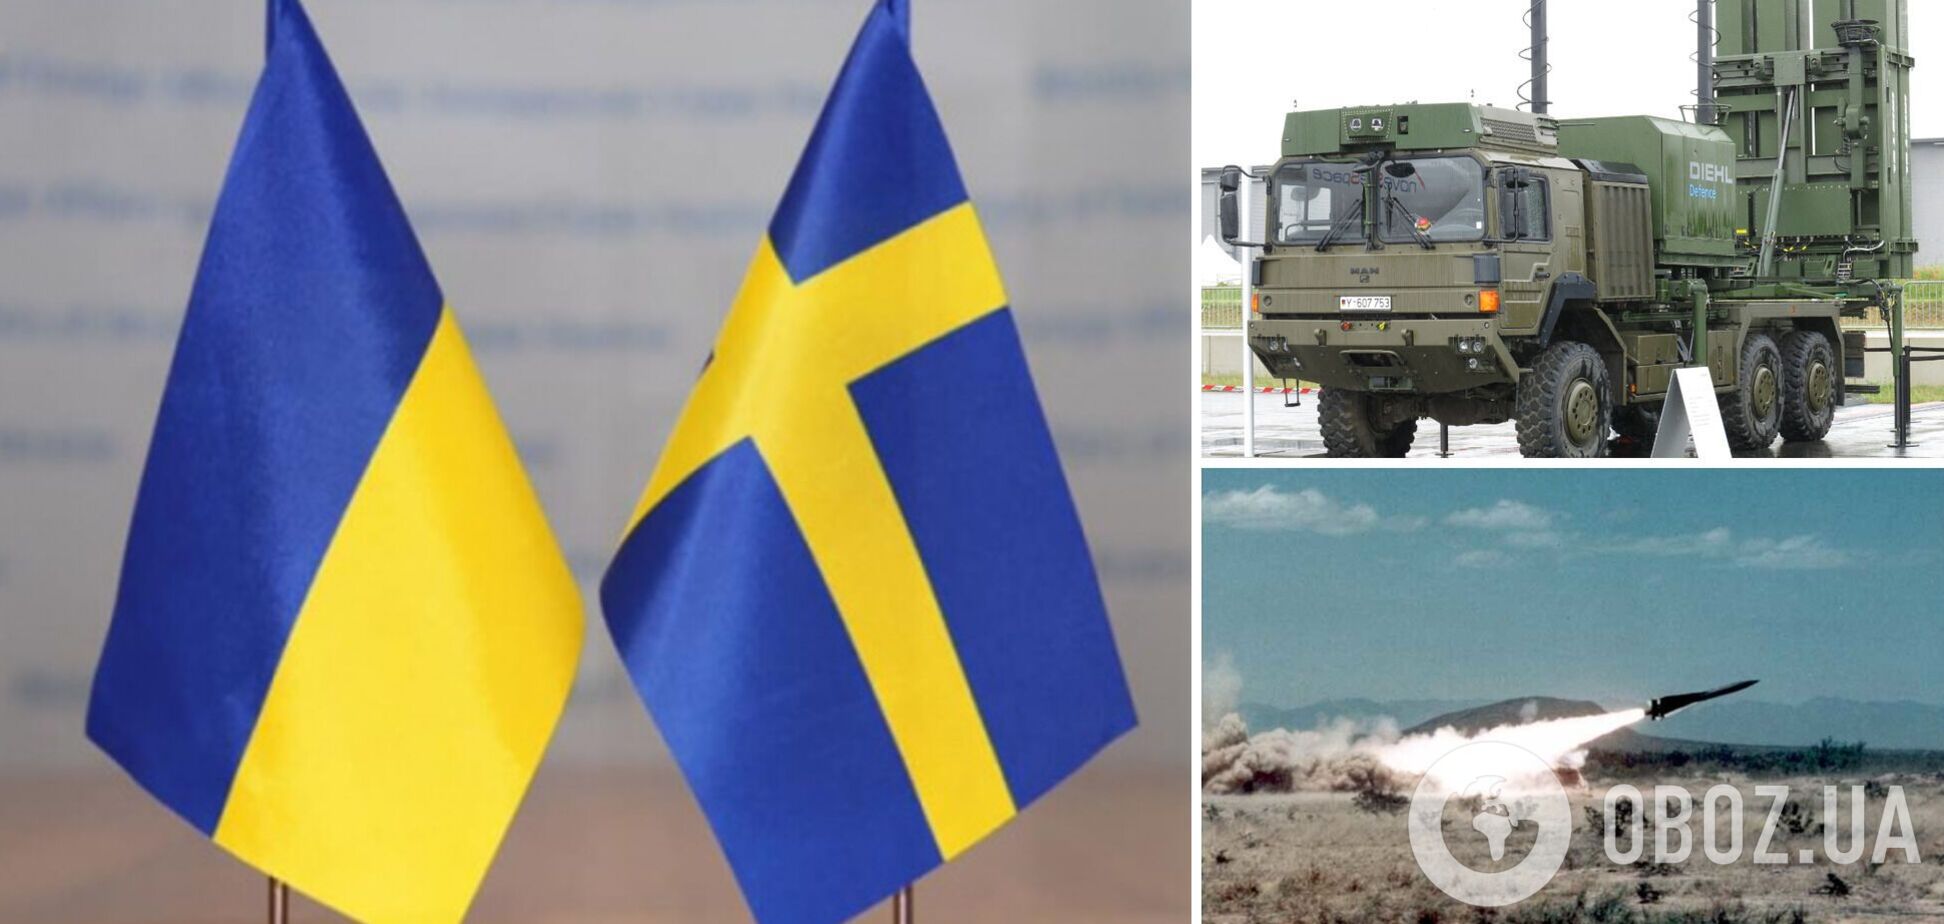 Ще більше ППО для України: Швеція передасть системи IRIS-T і Hawk 